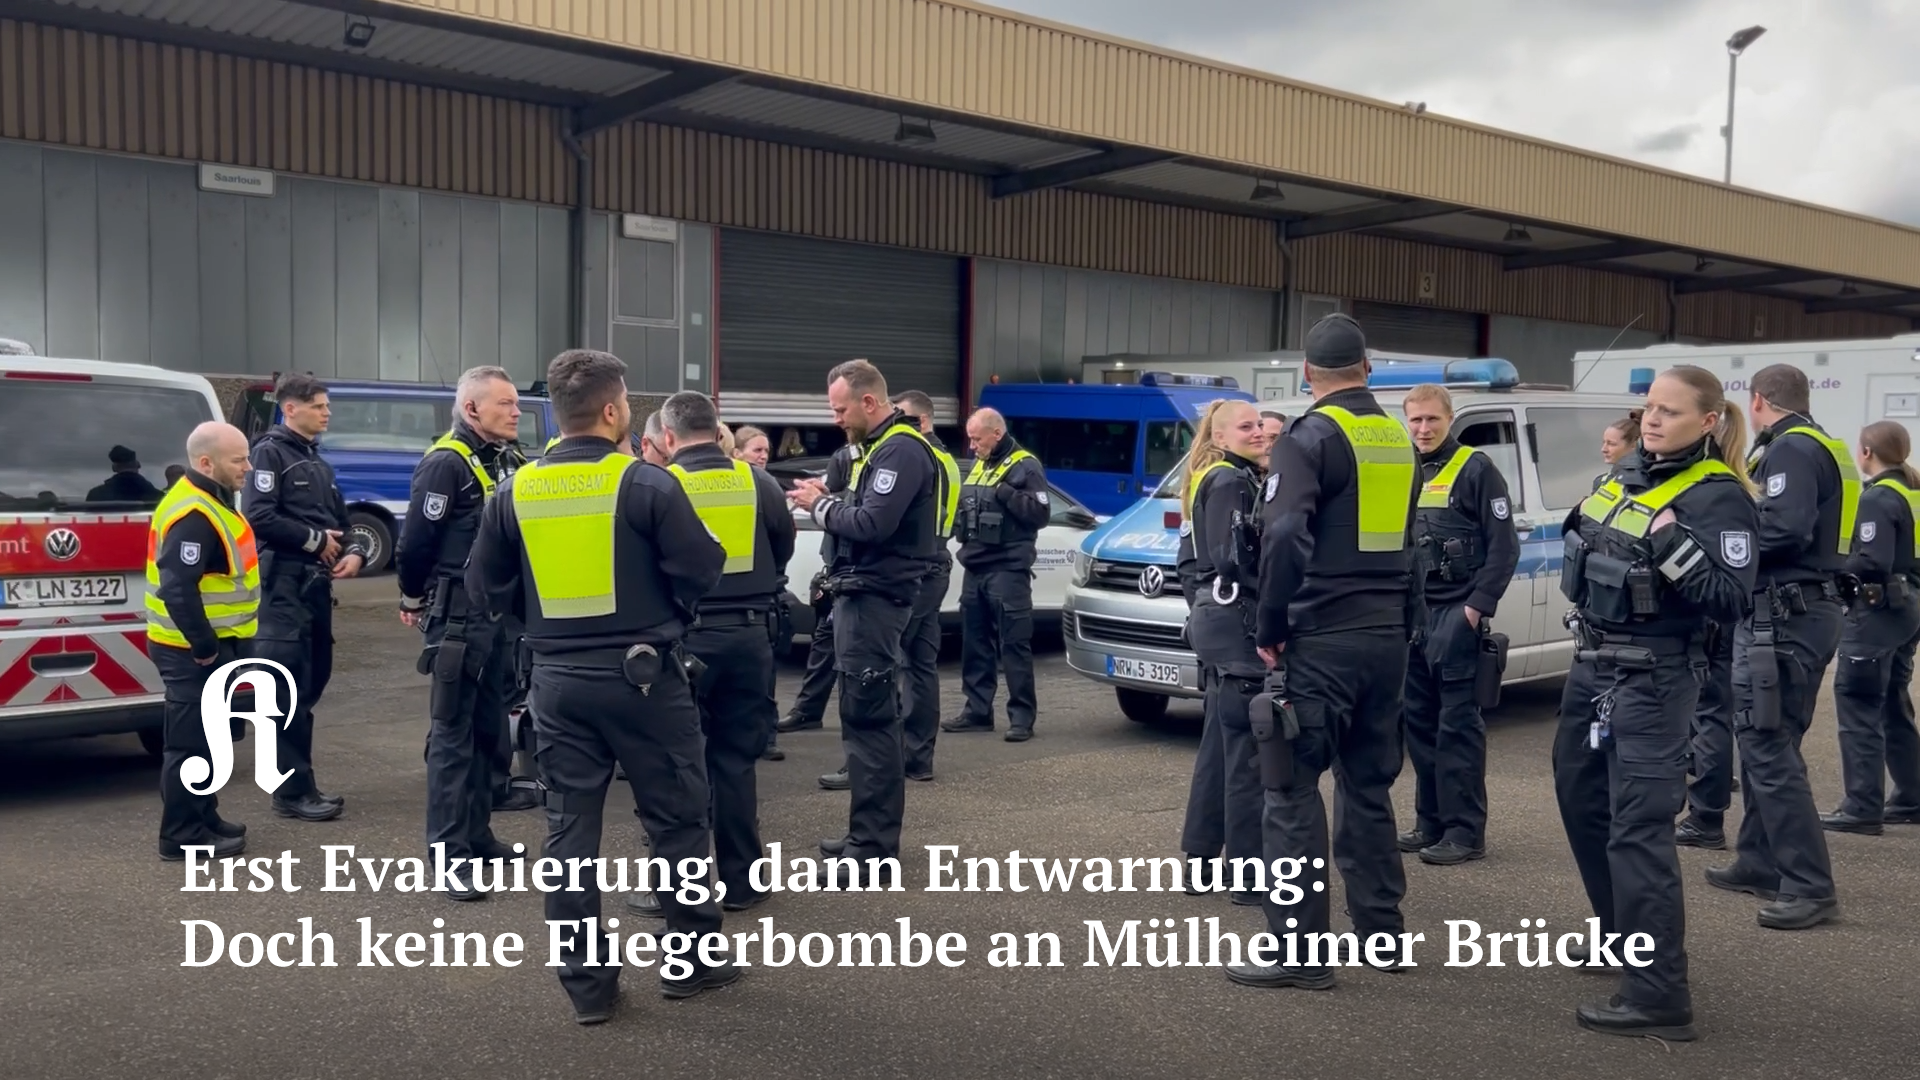 Erst Evakuierung, dann Entwarnung in Köln: Doch keine Fliegerbombe an Mülheimer Brücke